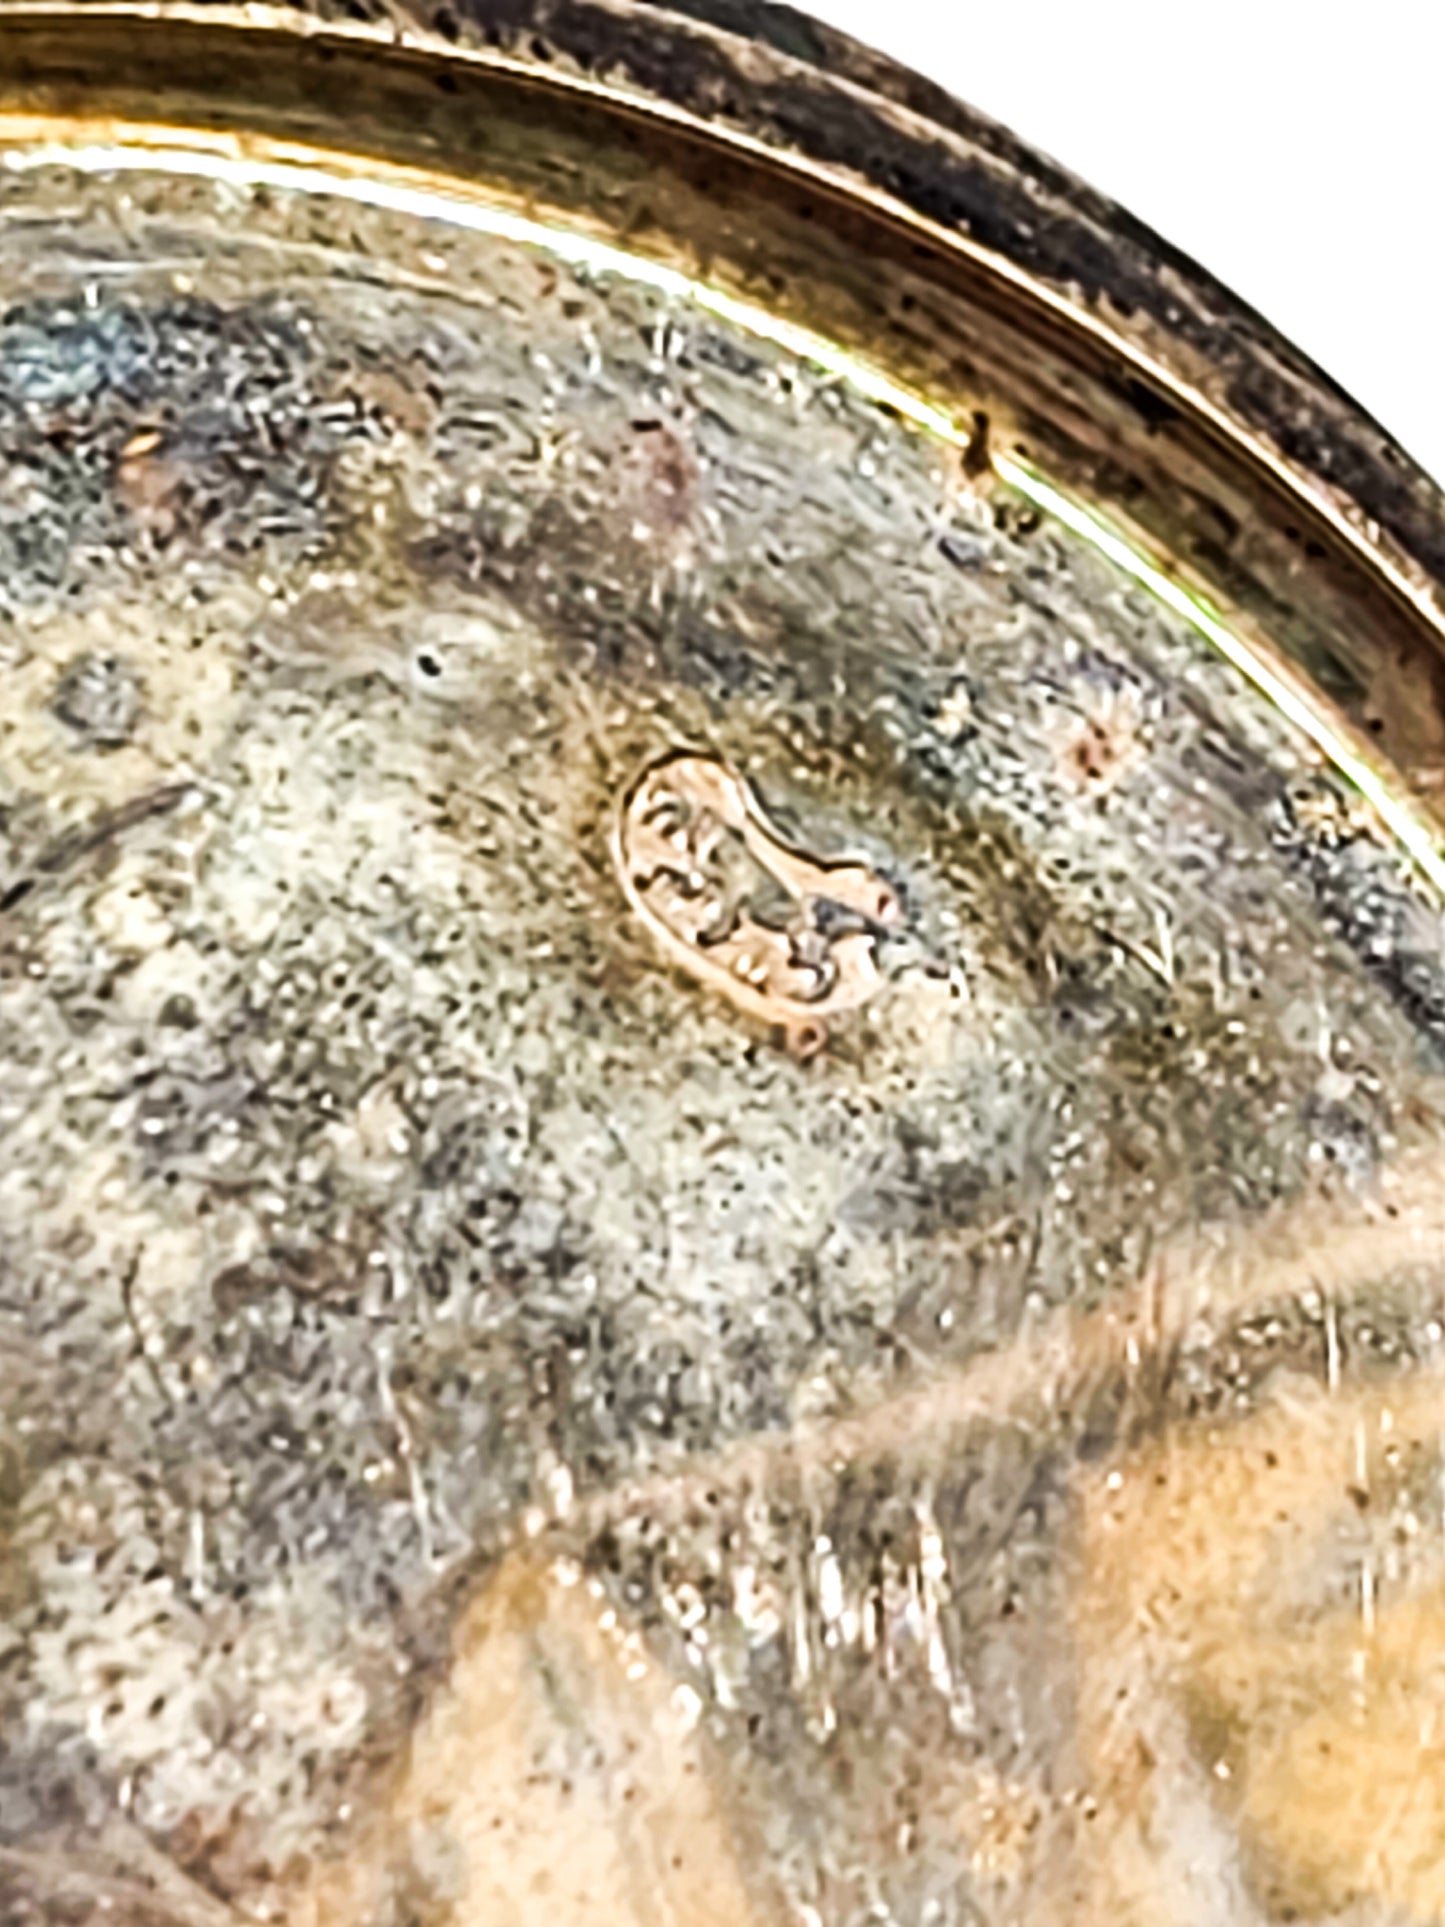 Bijou Bee and flower garden motif antique 900 silver pocket watch non working